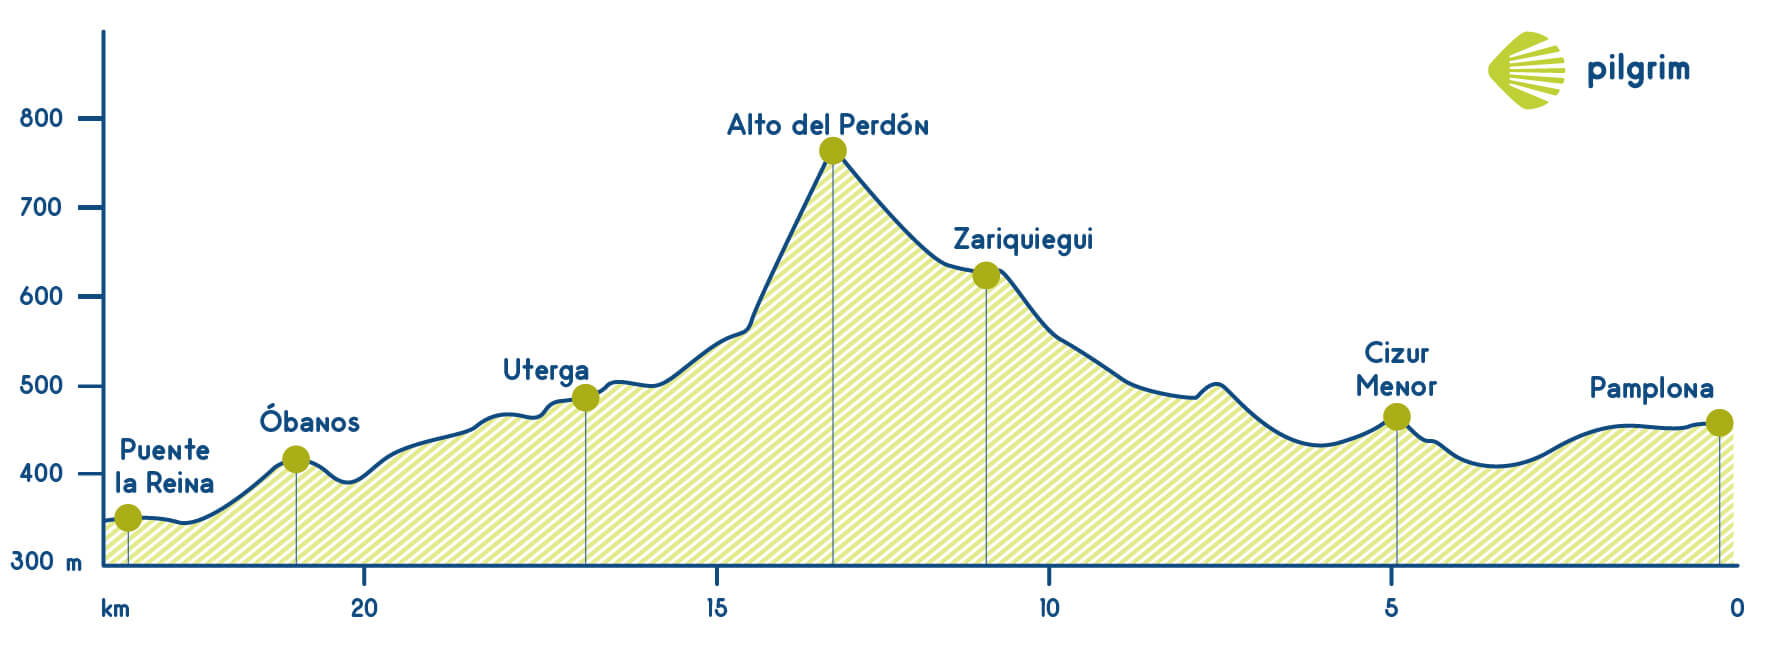 Stage 4 Franch Way (Camino Francés)